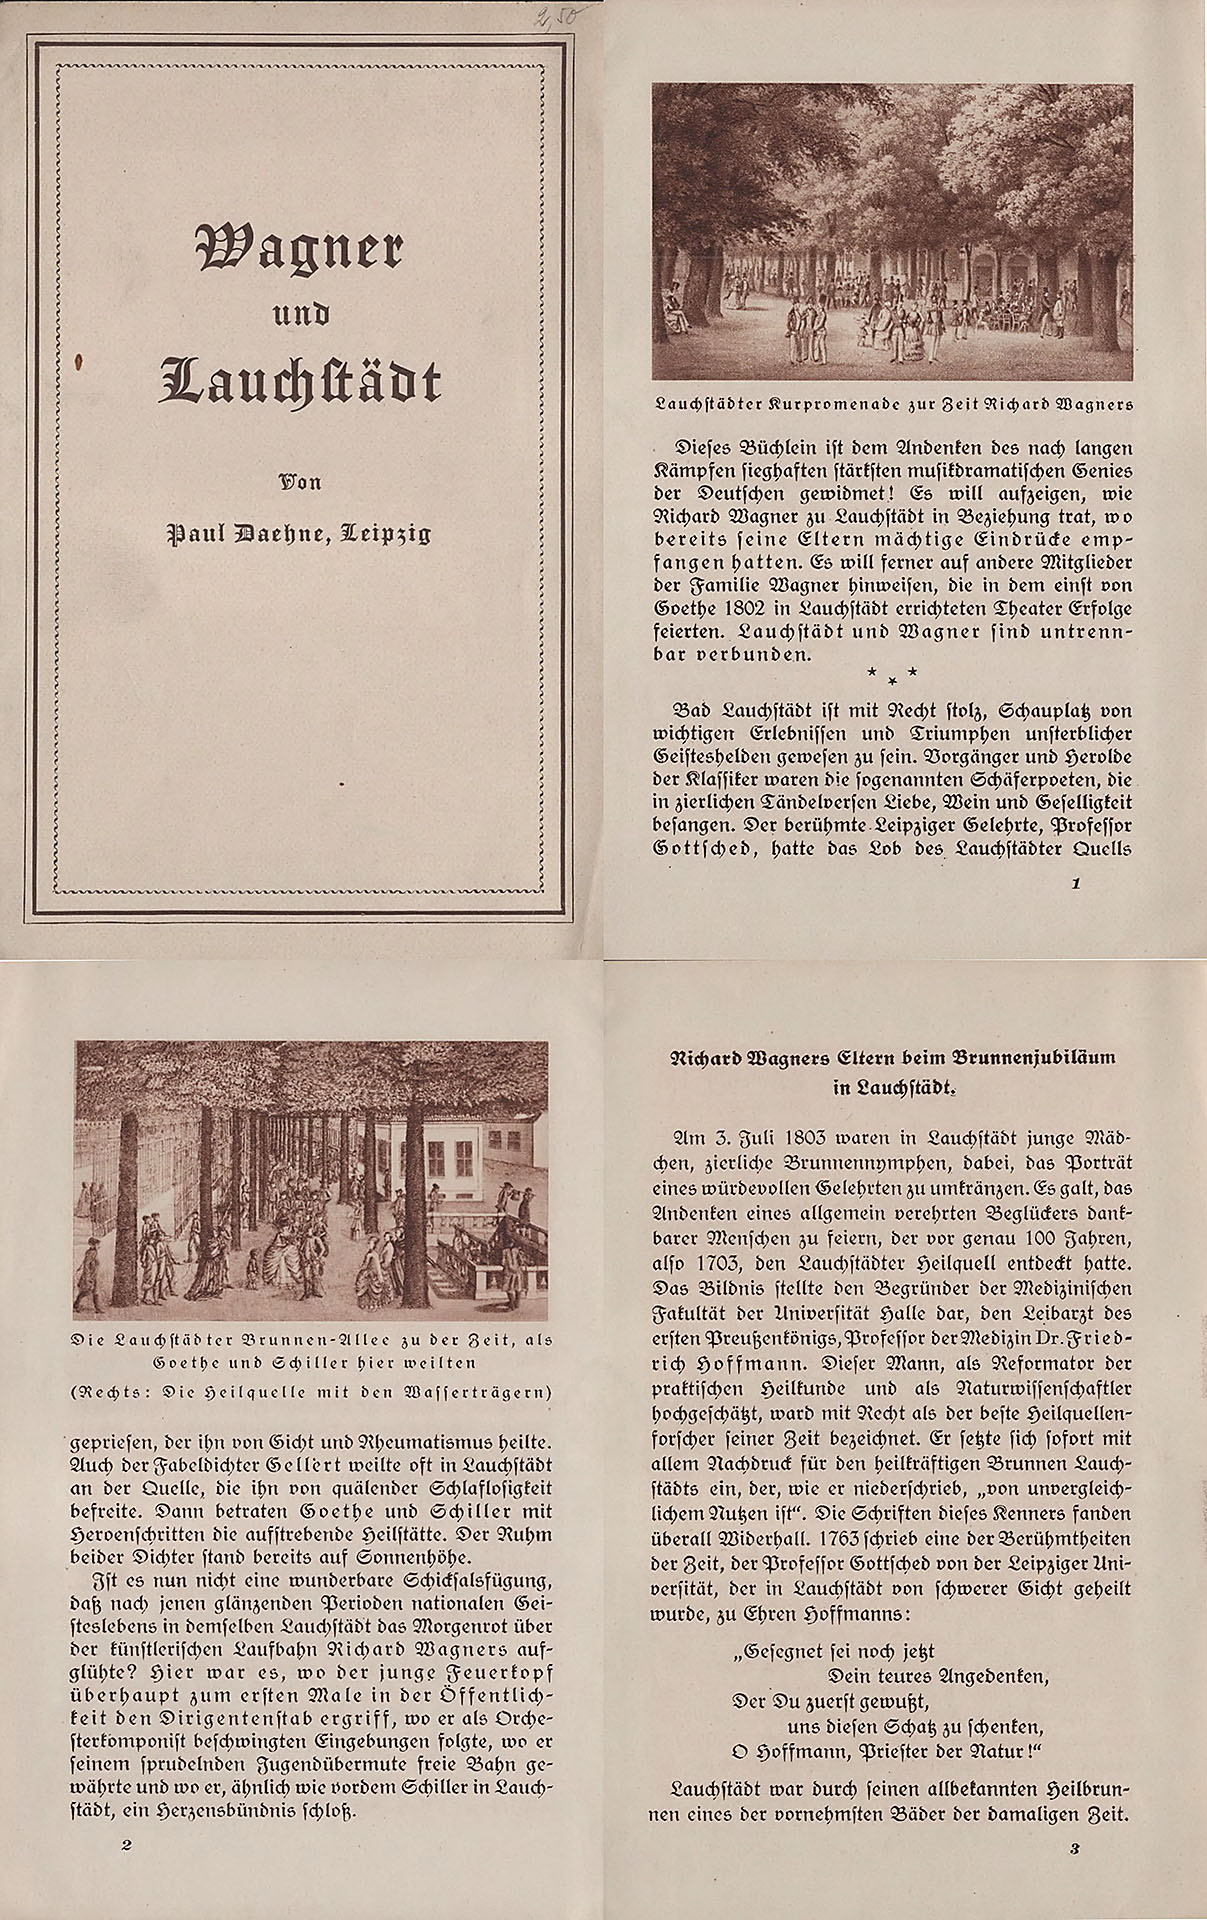 Wagner und Lauchstädt - Daehne, Paul